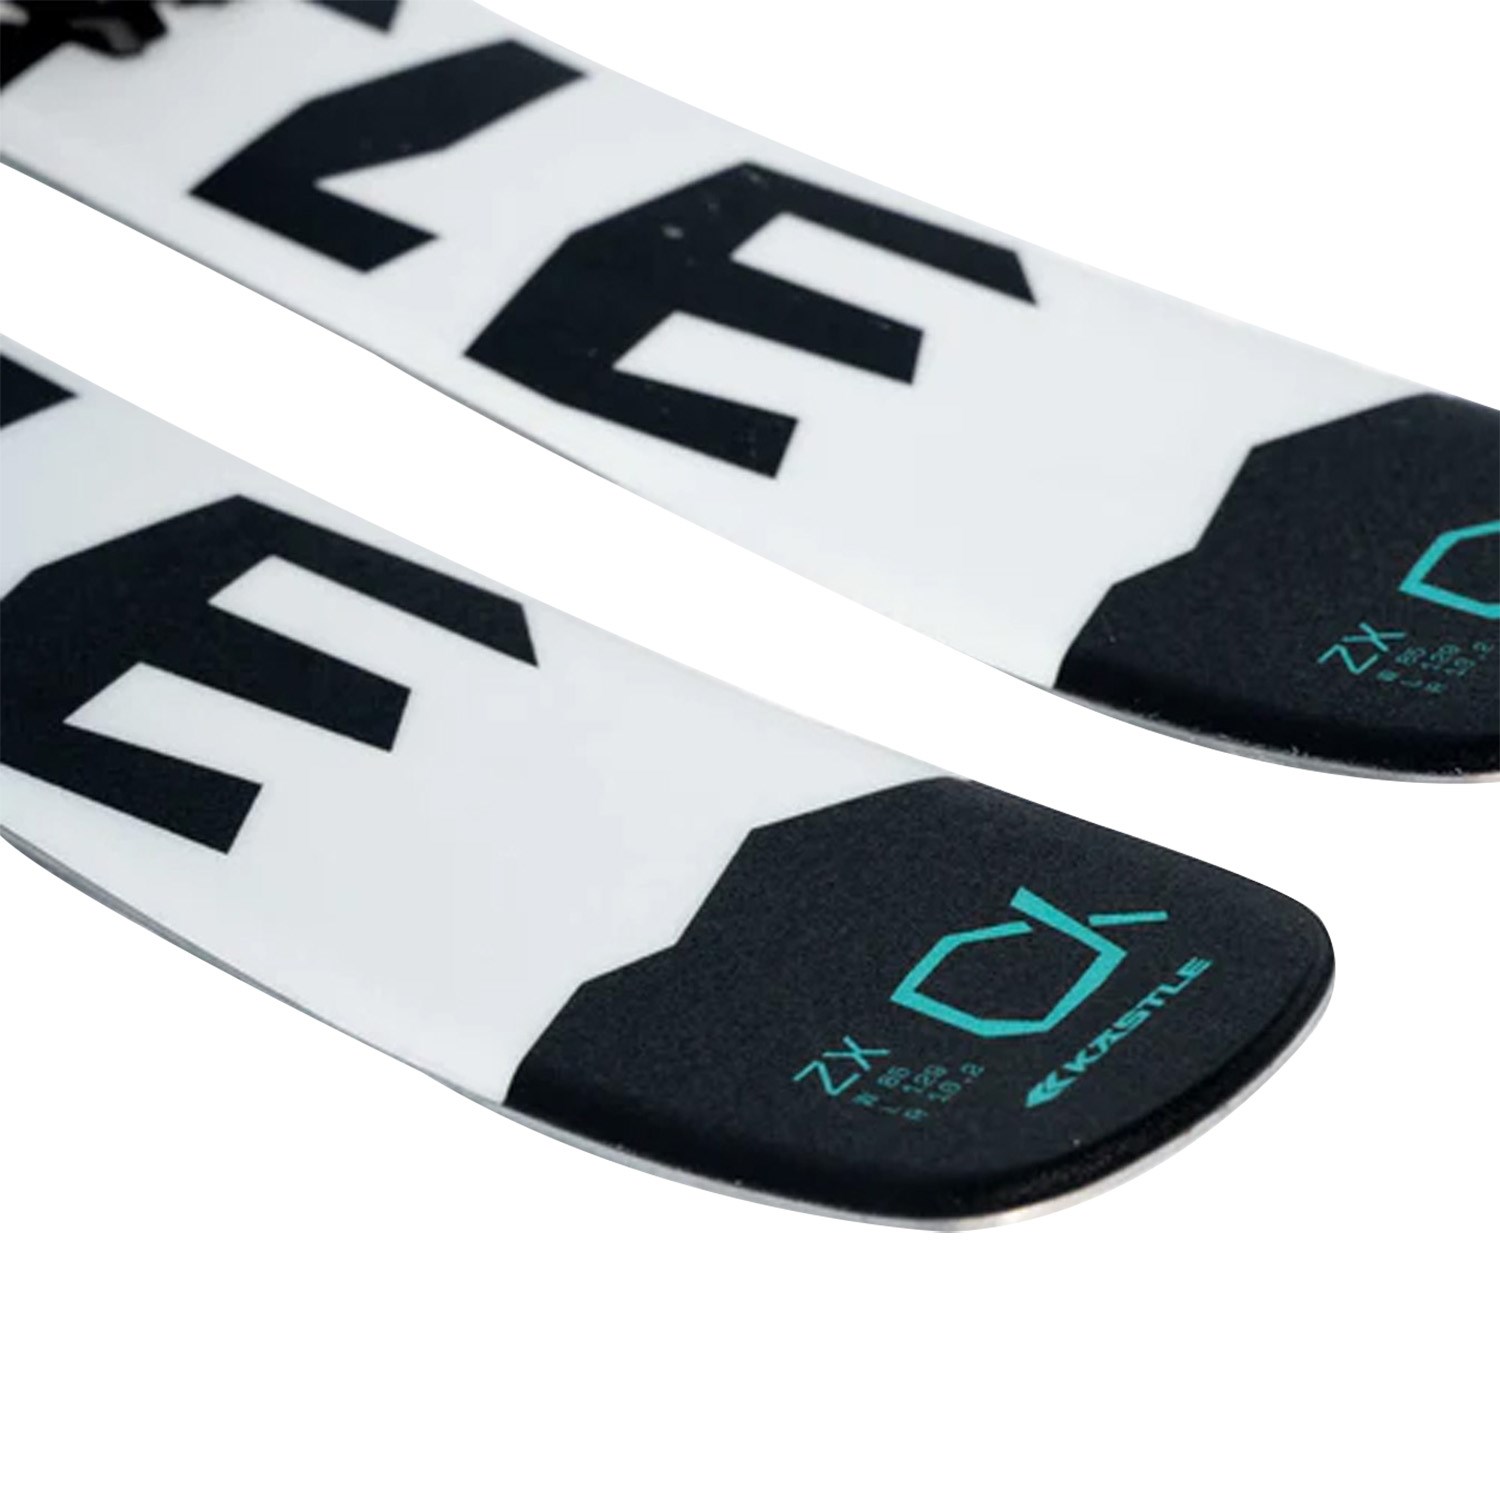 Kastle ZX Alpha Skis + JRS 7.5 GW Ski Bindings - Kids' 2024 | evo